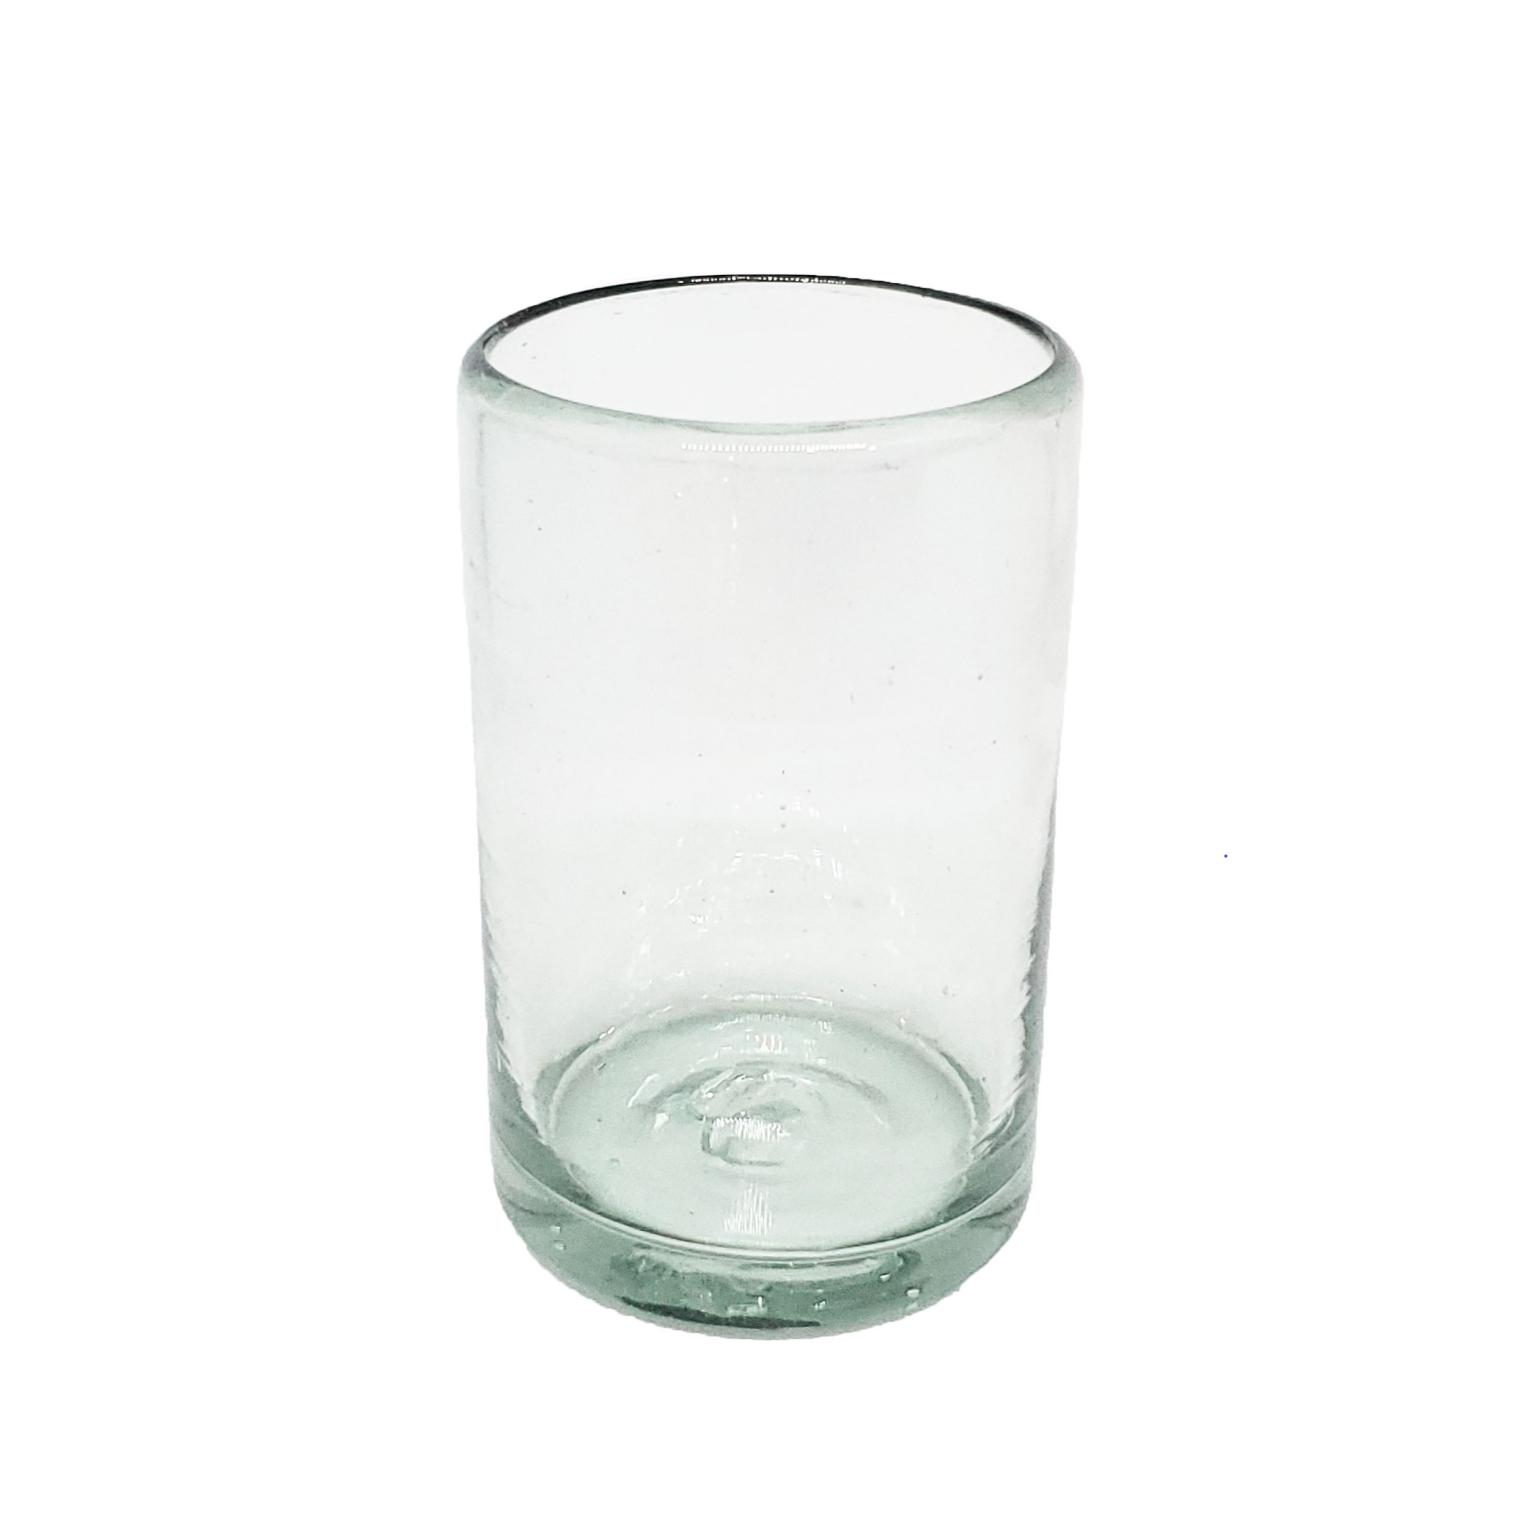 Novedades / Juego de 6 vasos Jugo 9oz Transparentes / stos artesanales vasos le darn un toque clsico a su bebida favorita.